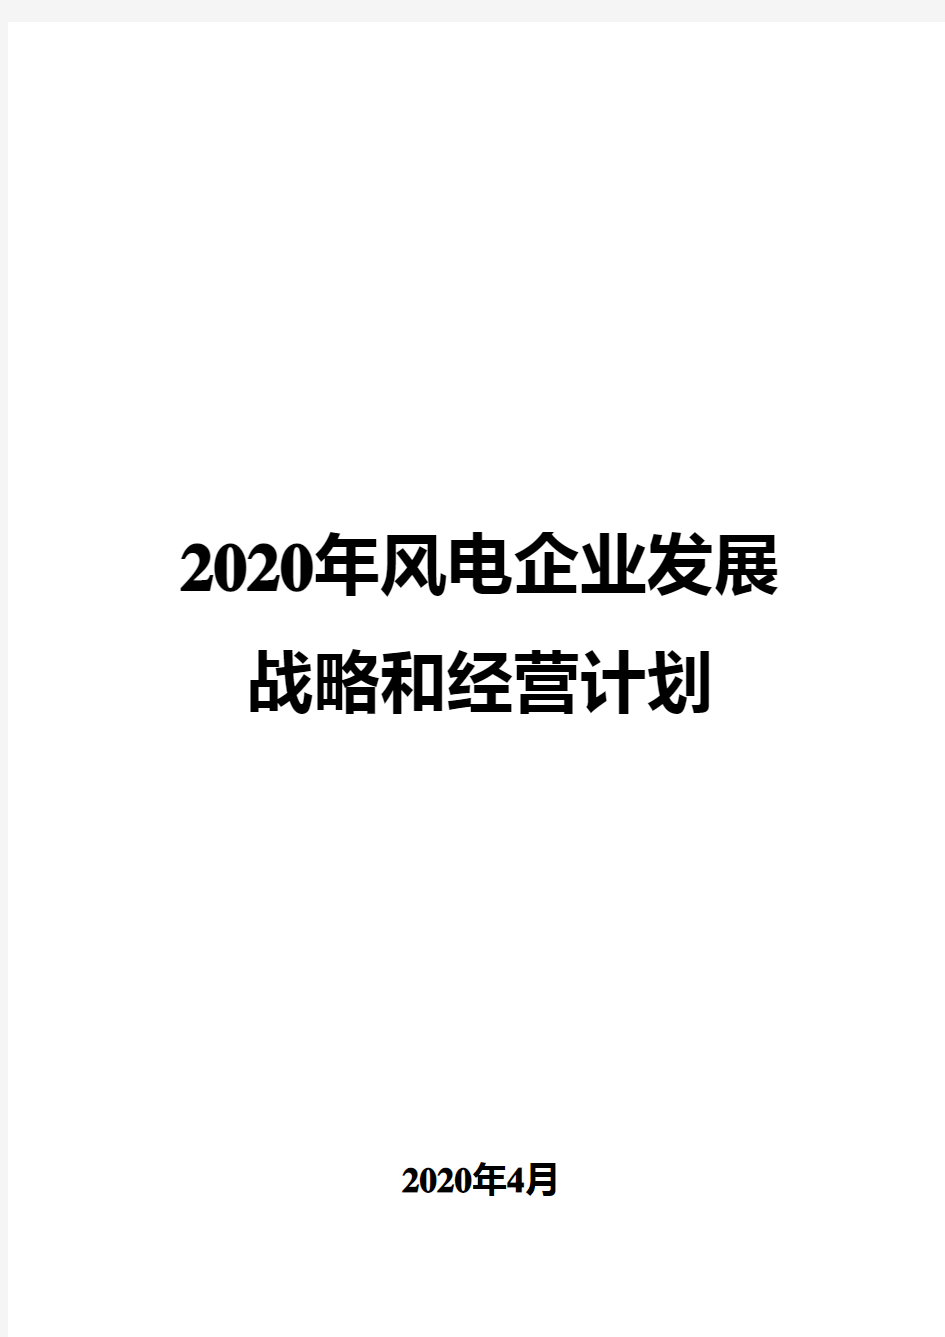 2020年风电企业发展战略和经营计划